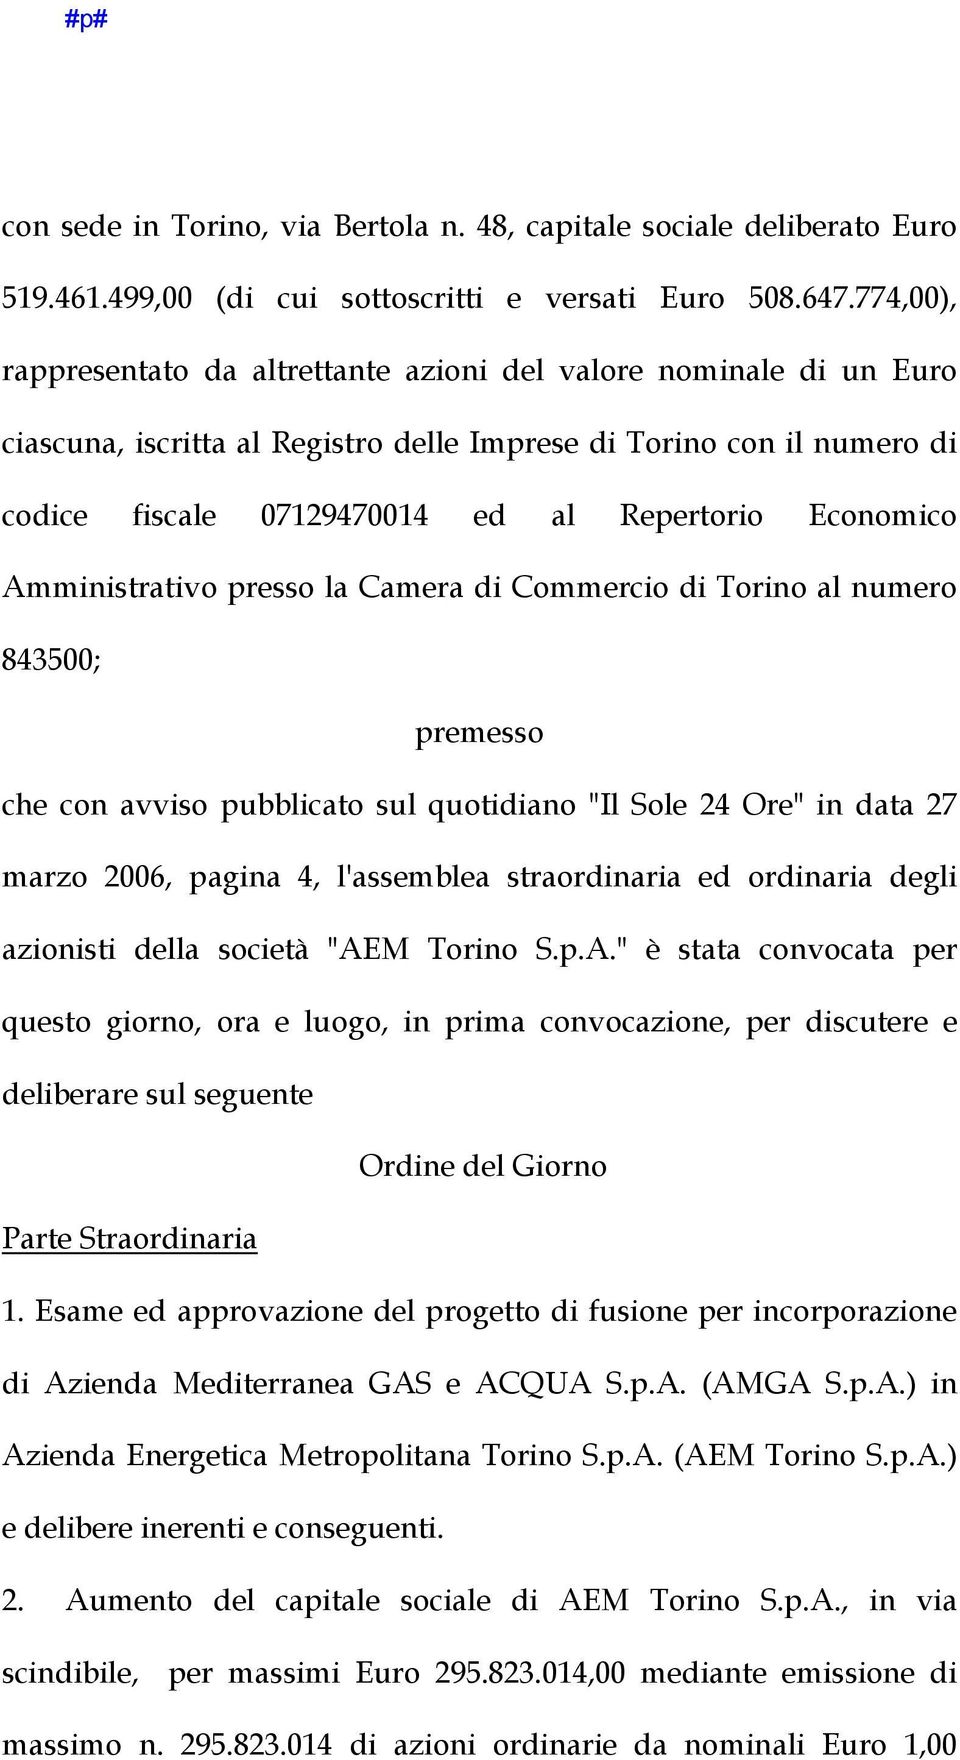 Economico Amministrativo presso la Camera di Commercio di Torino al numero 843500; premesso che con avviso pubblicato sul quotidiano "Il Sole 24 Ore" in data 27 marzo 2006, pagina 4, l'assemblea